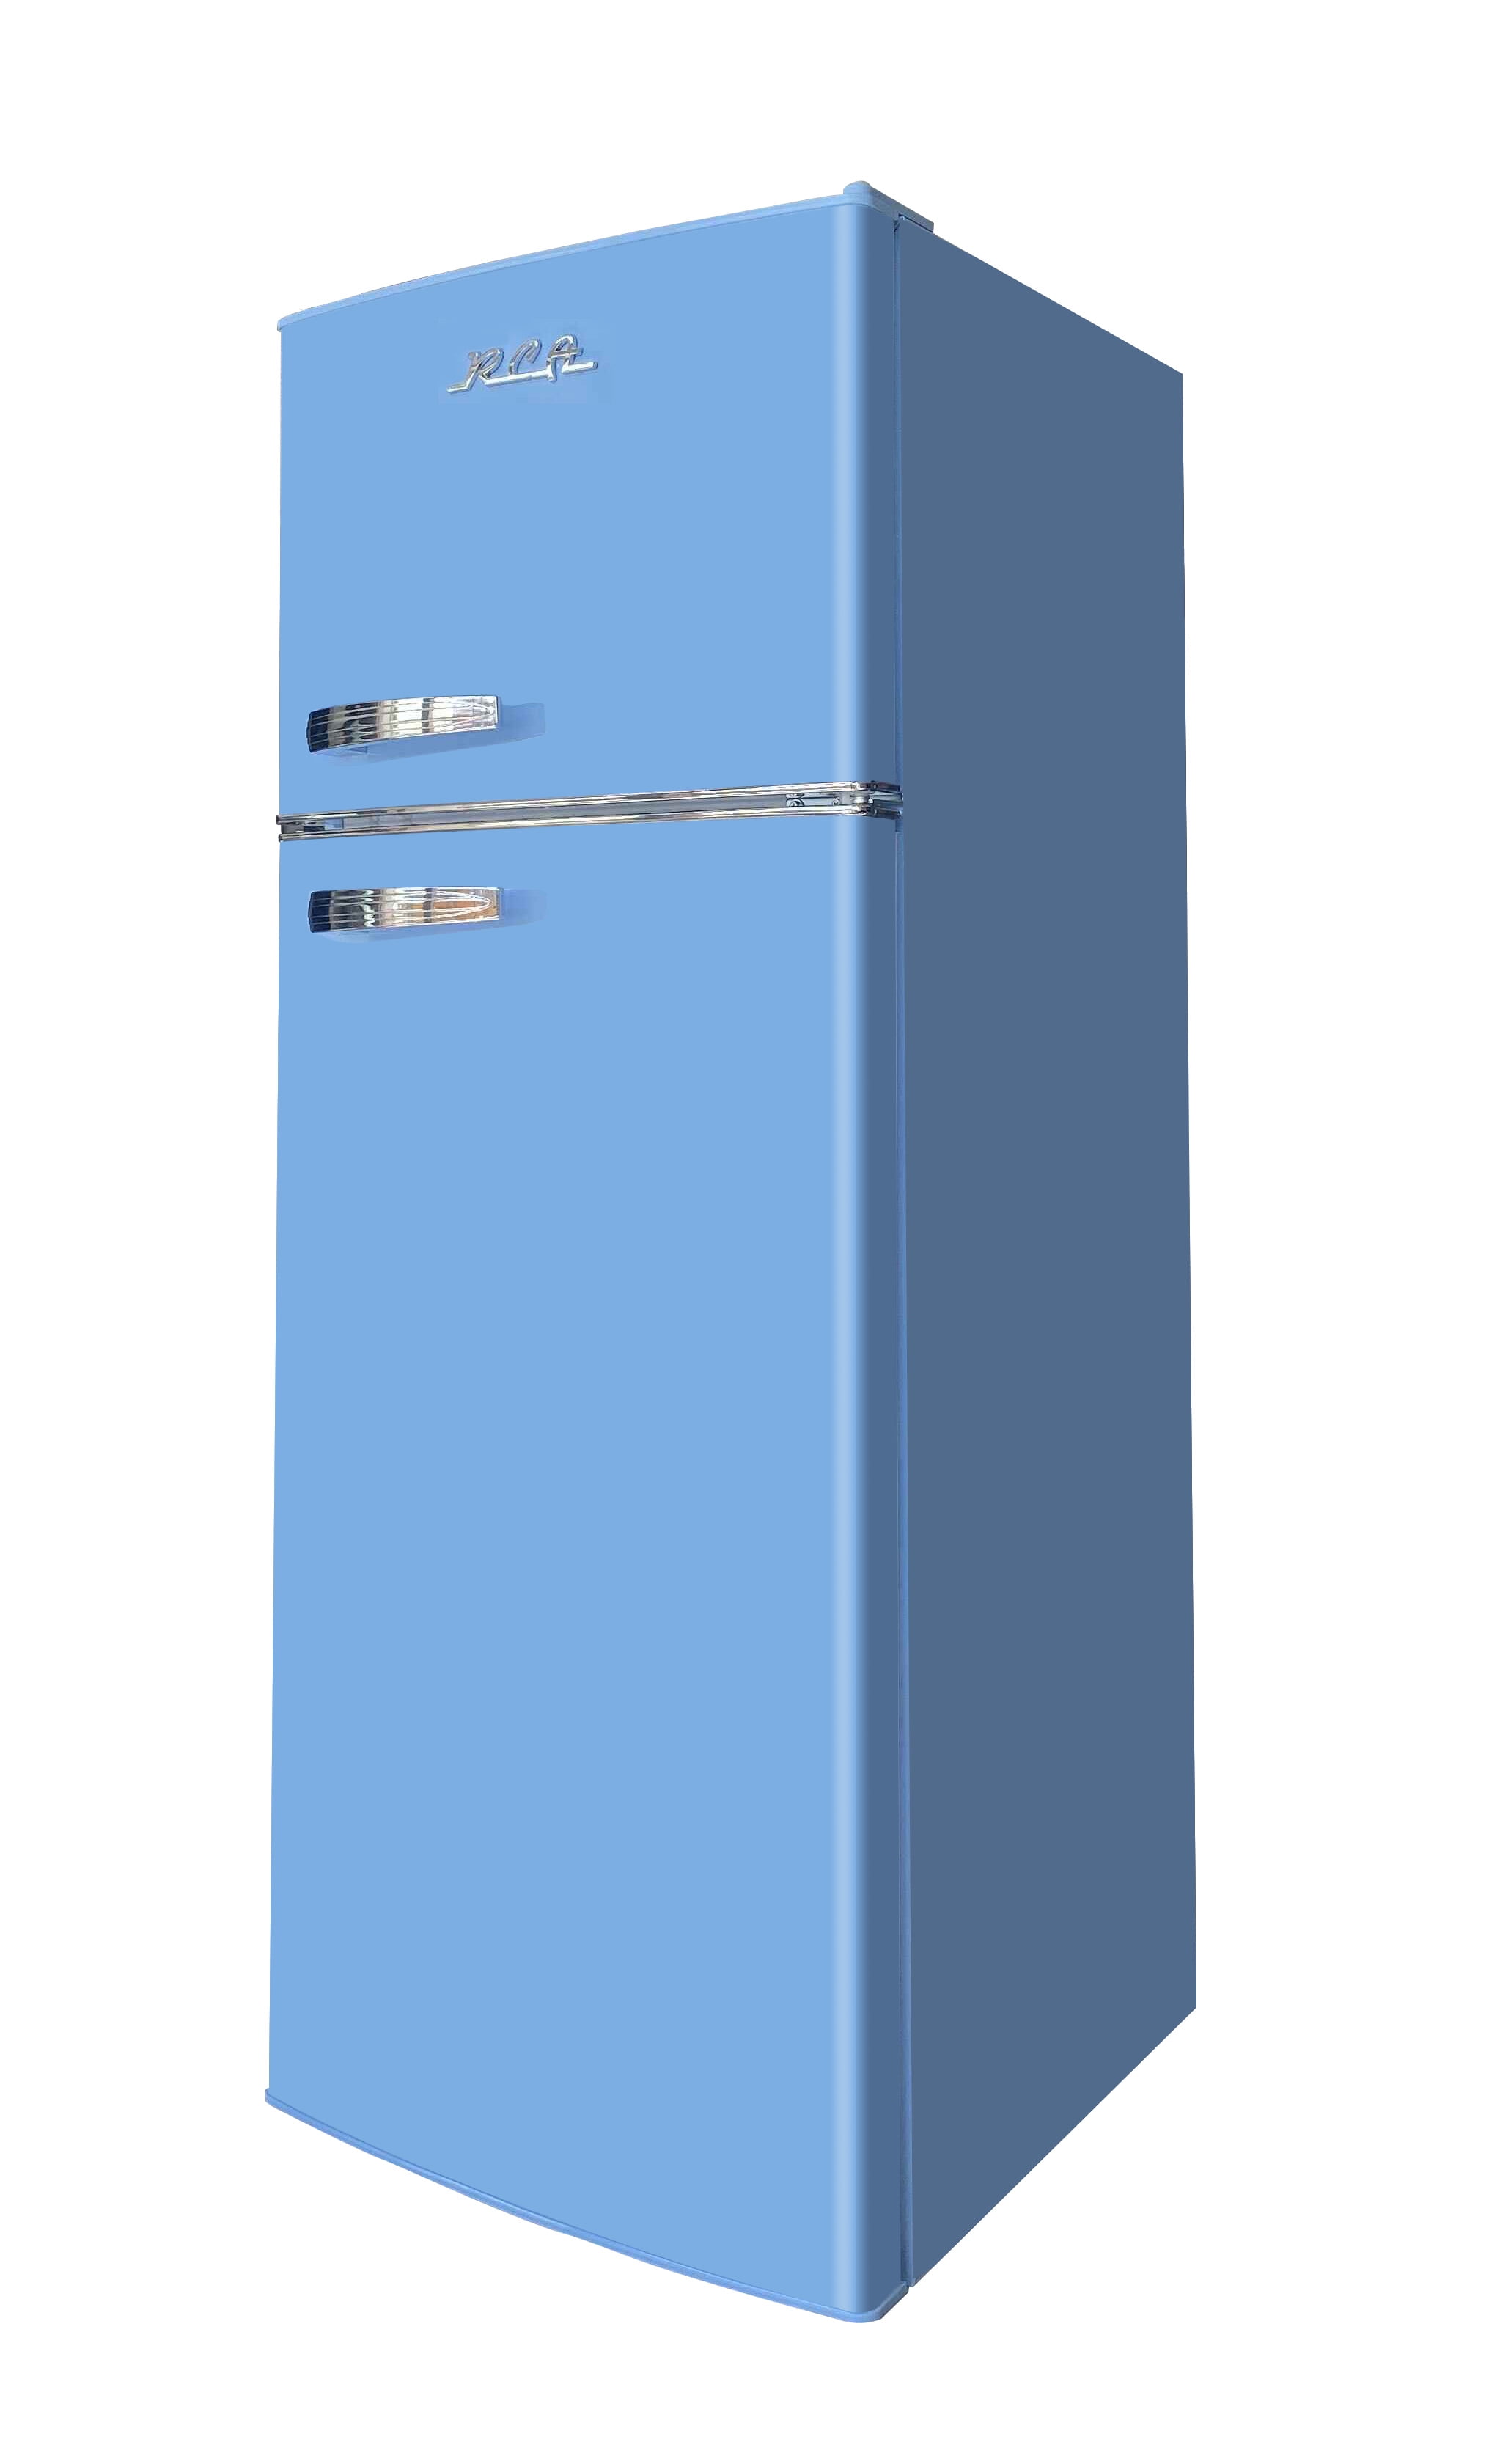 RCA 7.5 Cu. Ft. Retro Top Freezer Refrigerator RFR786, Black